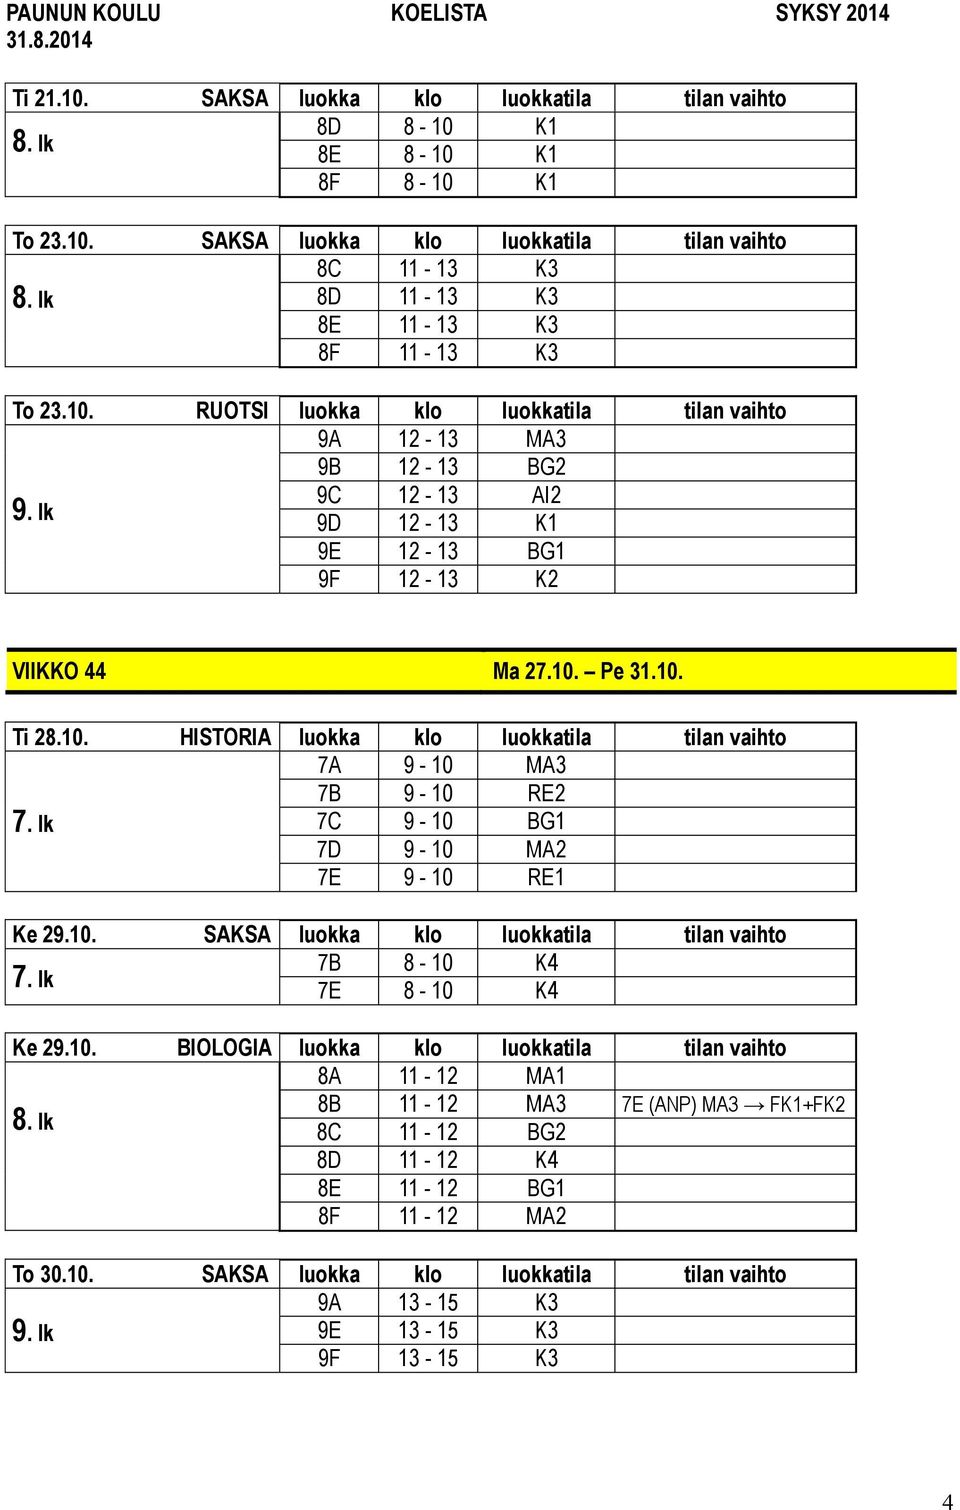 10. BIOLOGIA luokka klo luokkatila tilan vaihto 8A 11-12 MA1 8B 11-12 MA3 7E (ANP) MA3 FK1+FK2 8C 11-12 BG2 8D 11-12 K4 8E 11-12 BG1 8F 11-12 MA2 To 30.10. SAKSA luokka klo luokkatila tilan vaihto 9A 13-15 K3 9E 13-15 K3 9F 13-15 K3 4